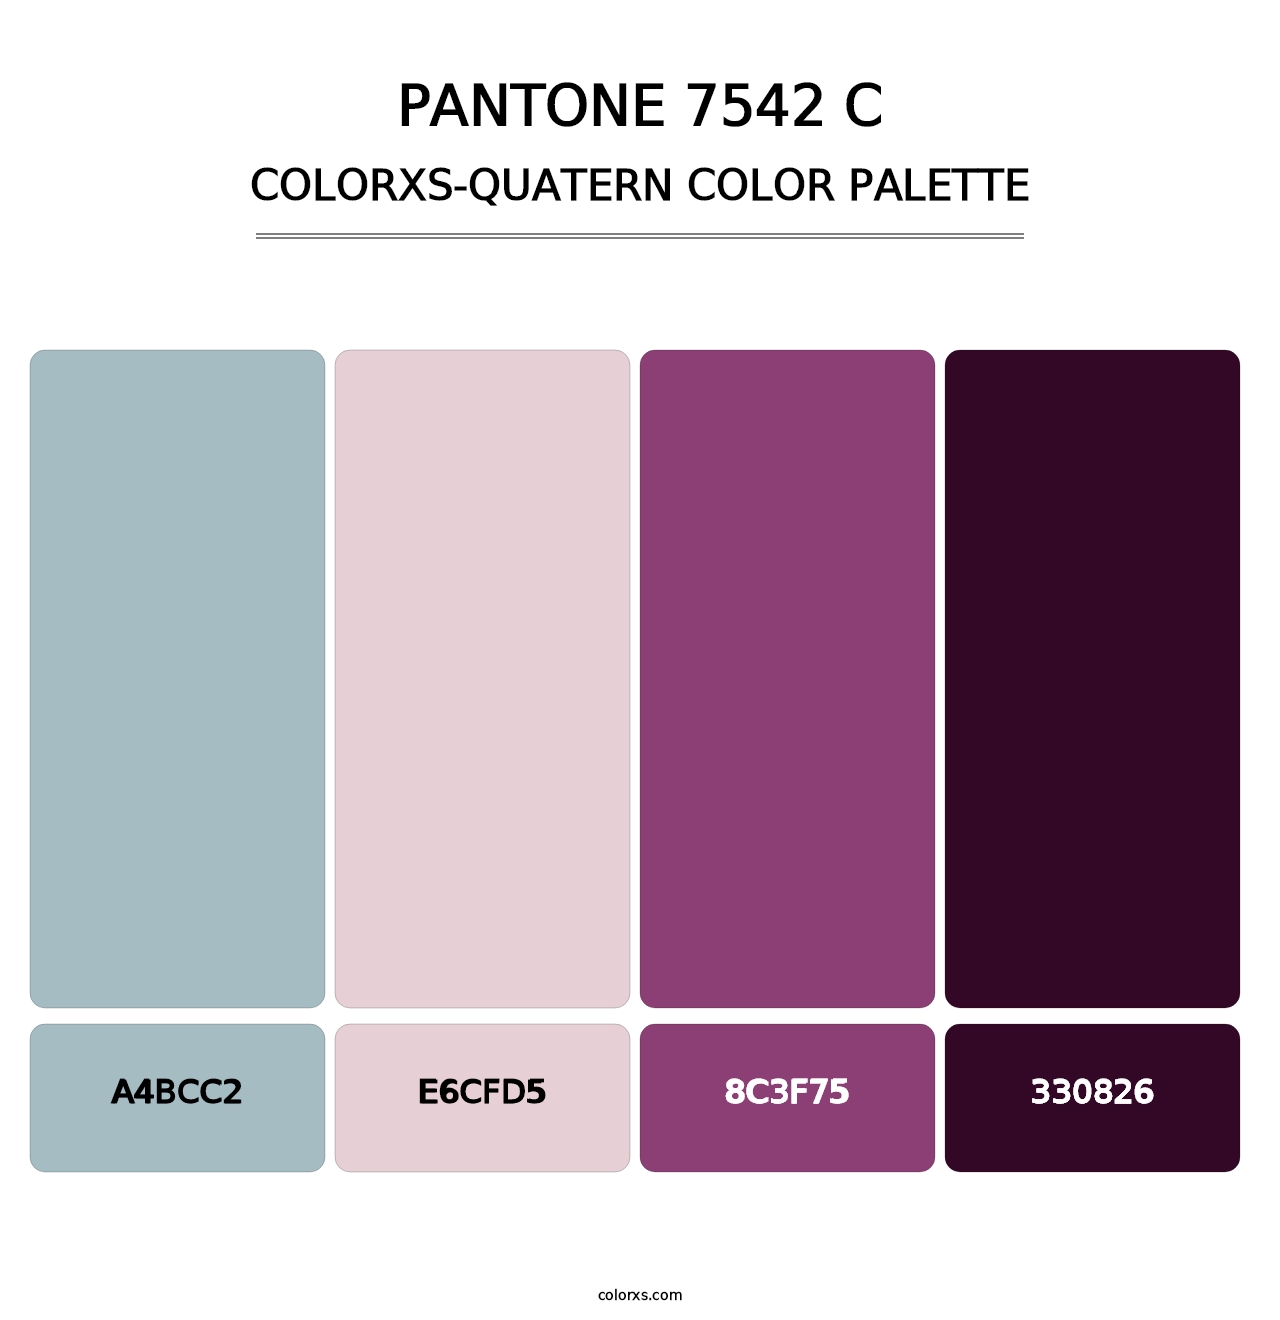 PANTONE 7542 C - Colorxs Quatern Palette